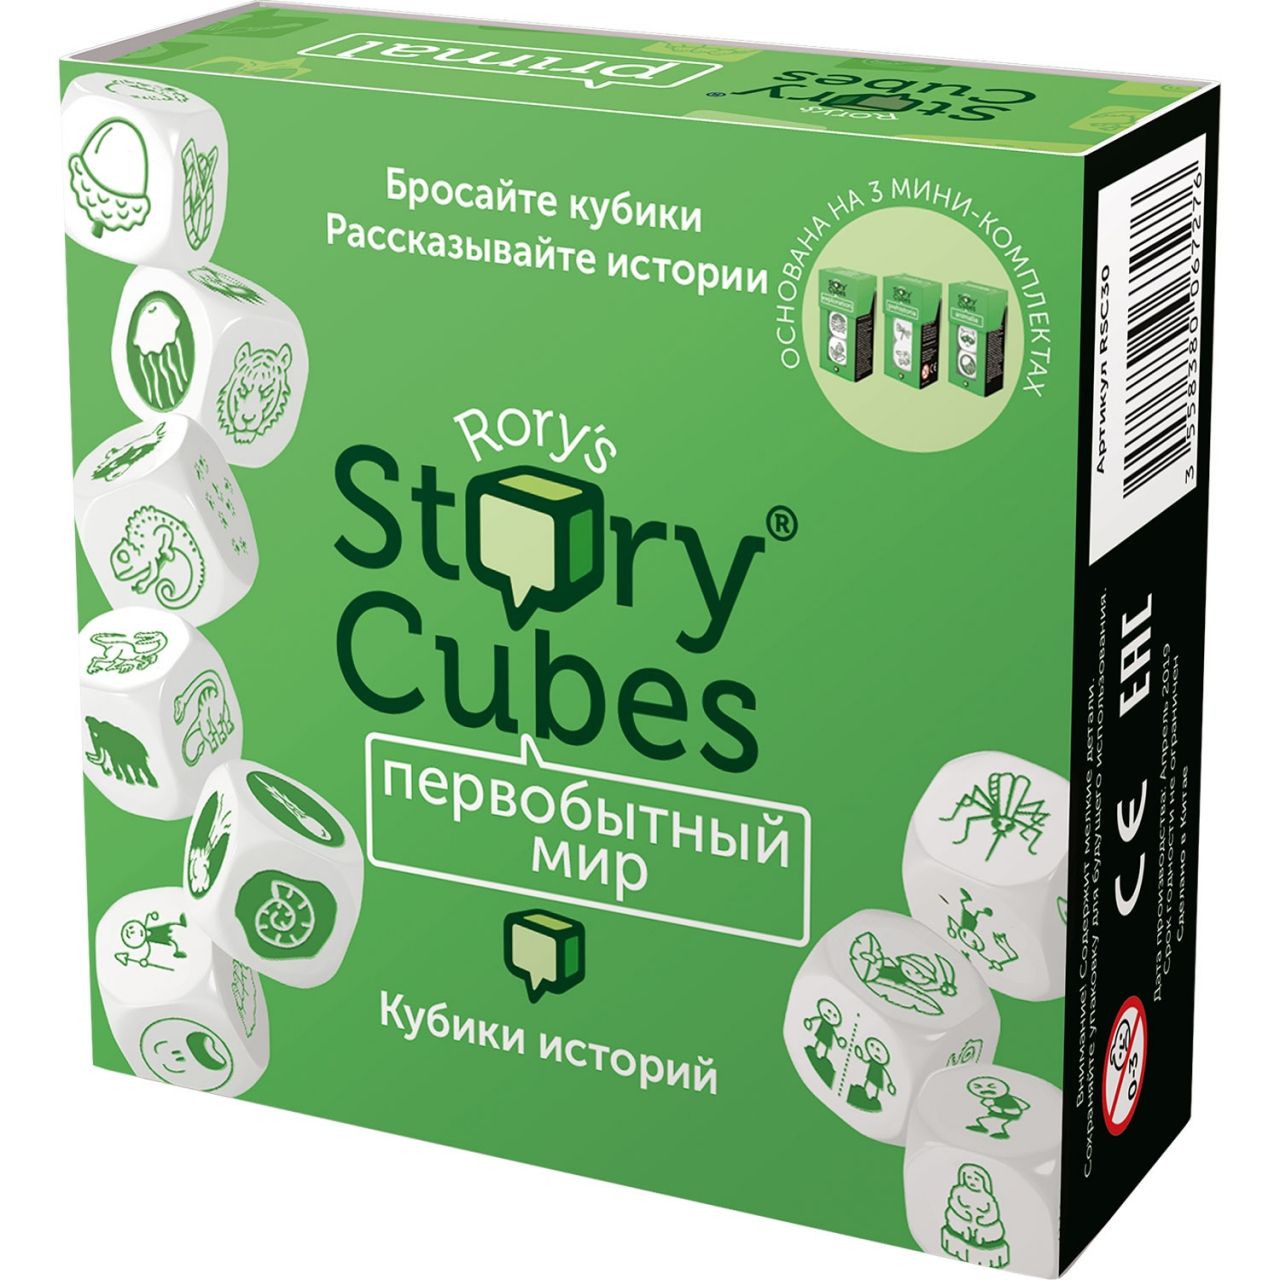 Настольная игра RORYS STORY CUBES RSC30 кубики историй Первобытный мир игра кубики историй действия